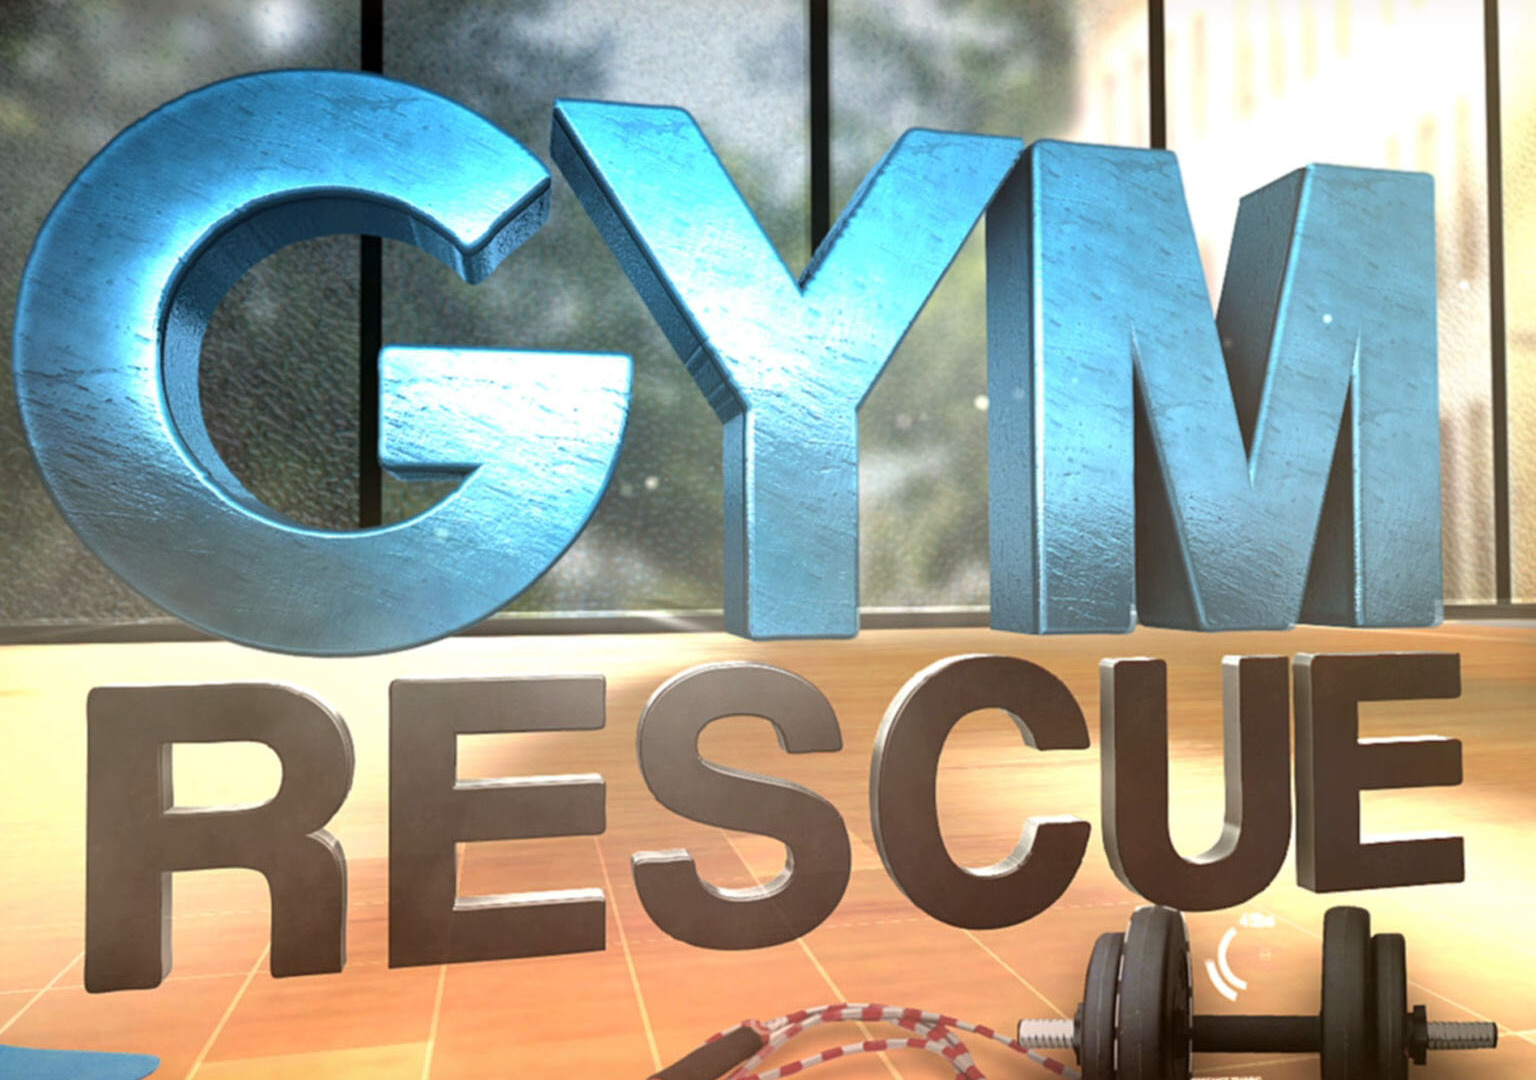 Show Gym Rescue